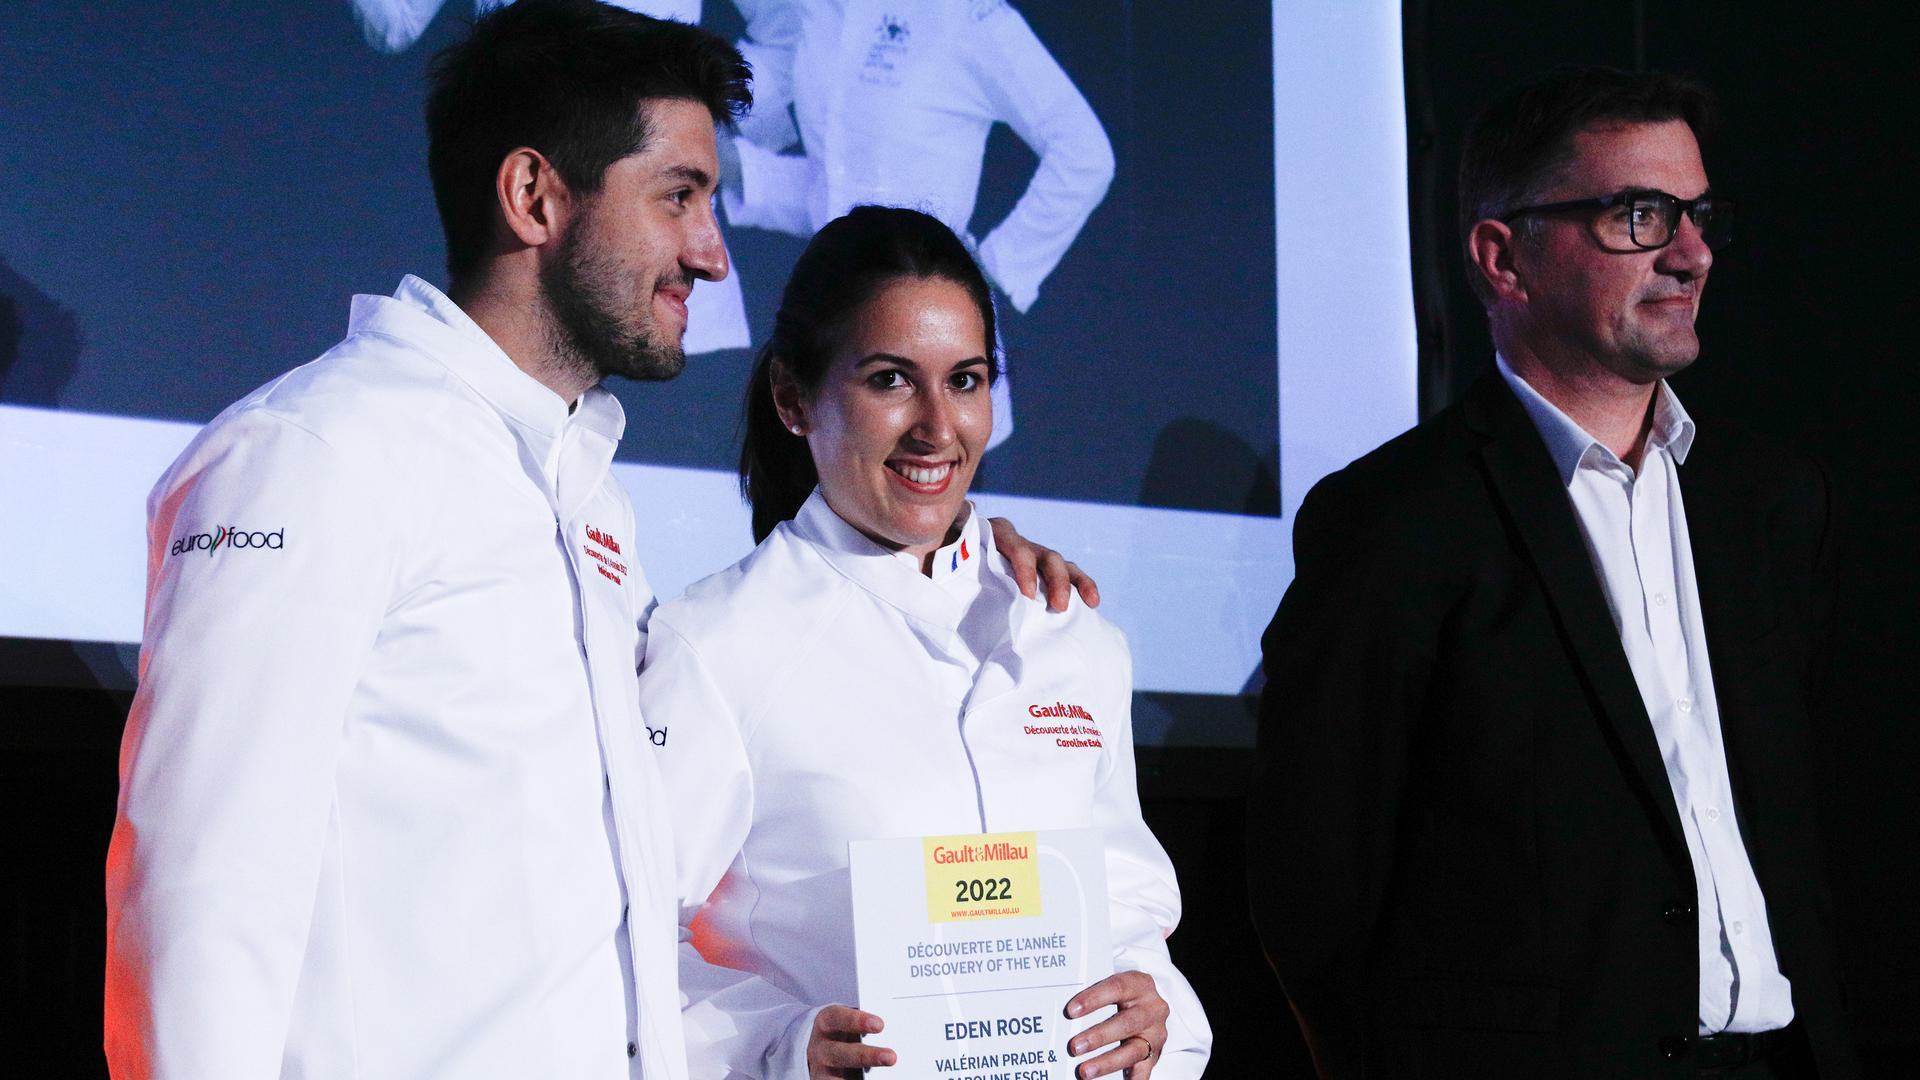 Caroline Esch et Valérian Prade reçoivent leur prix lors de la remise des prix "Gault & Millau".